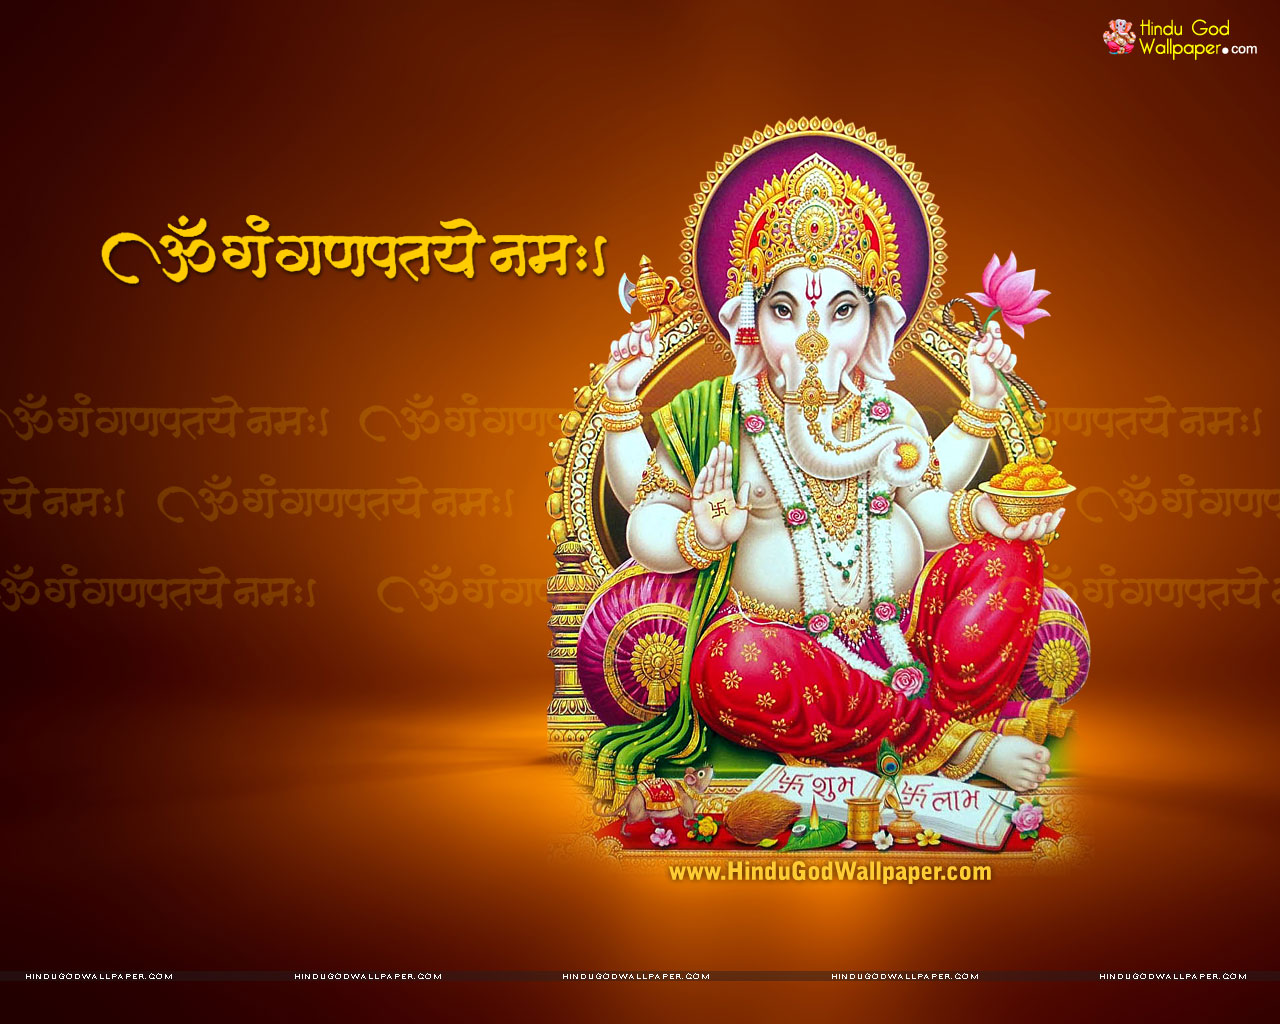 Jai Ganesh Wallpaper, Photo & Image Free Download